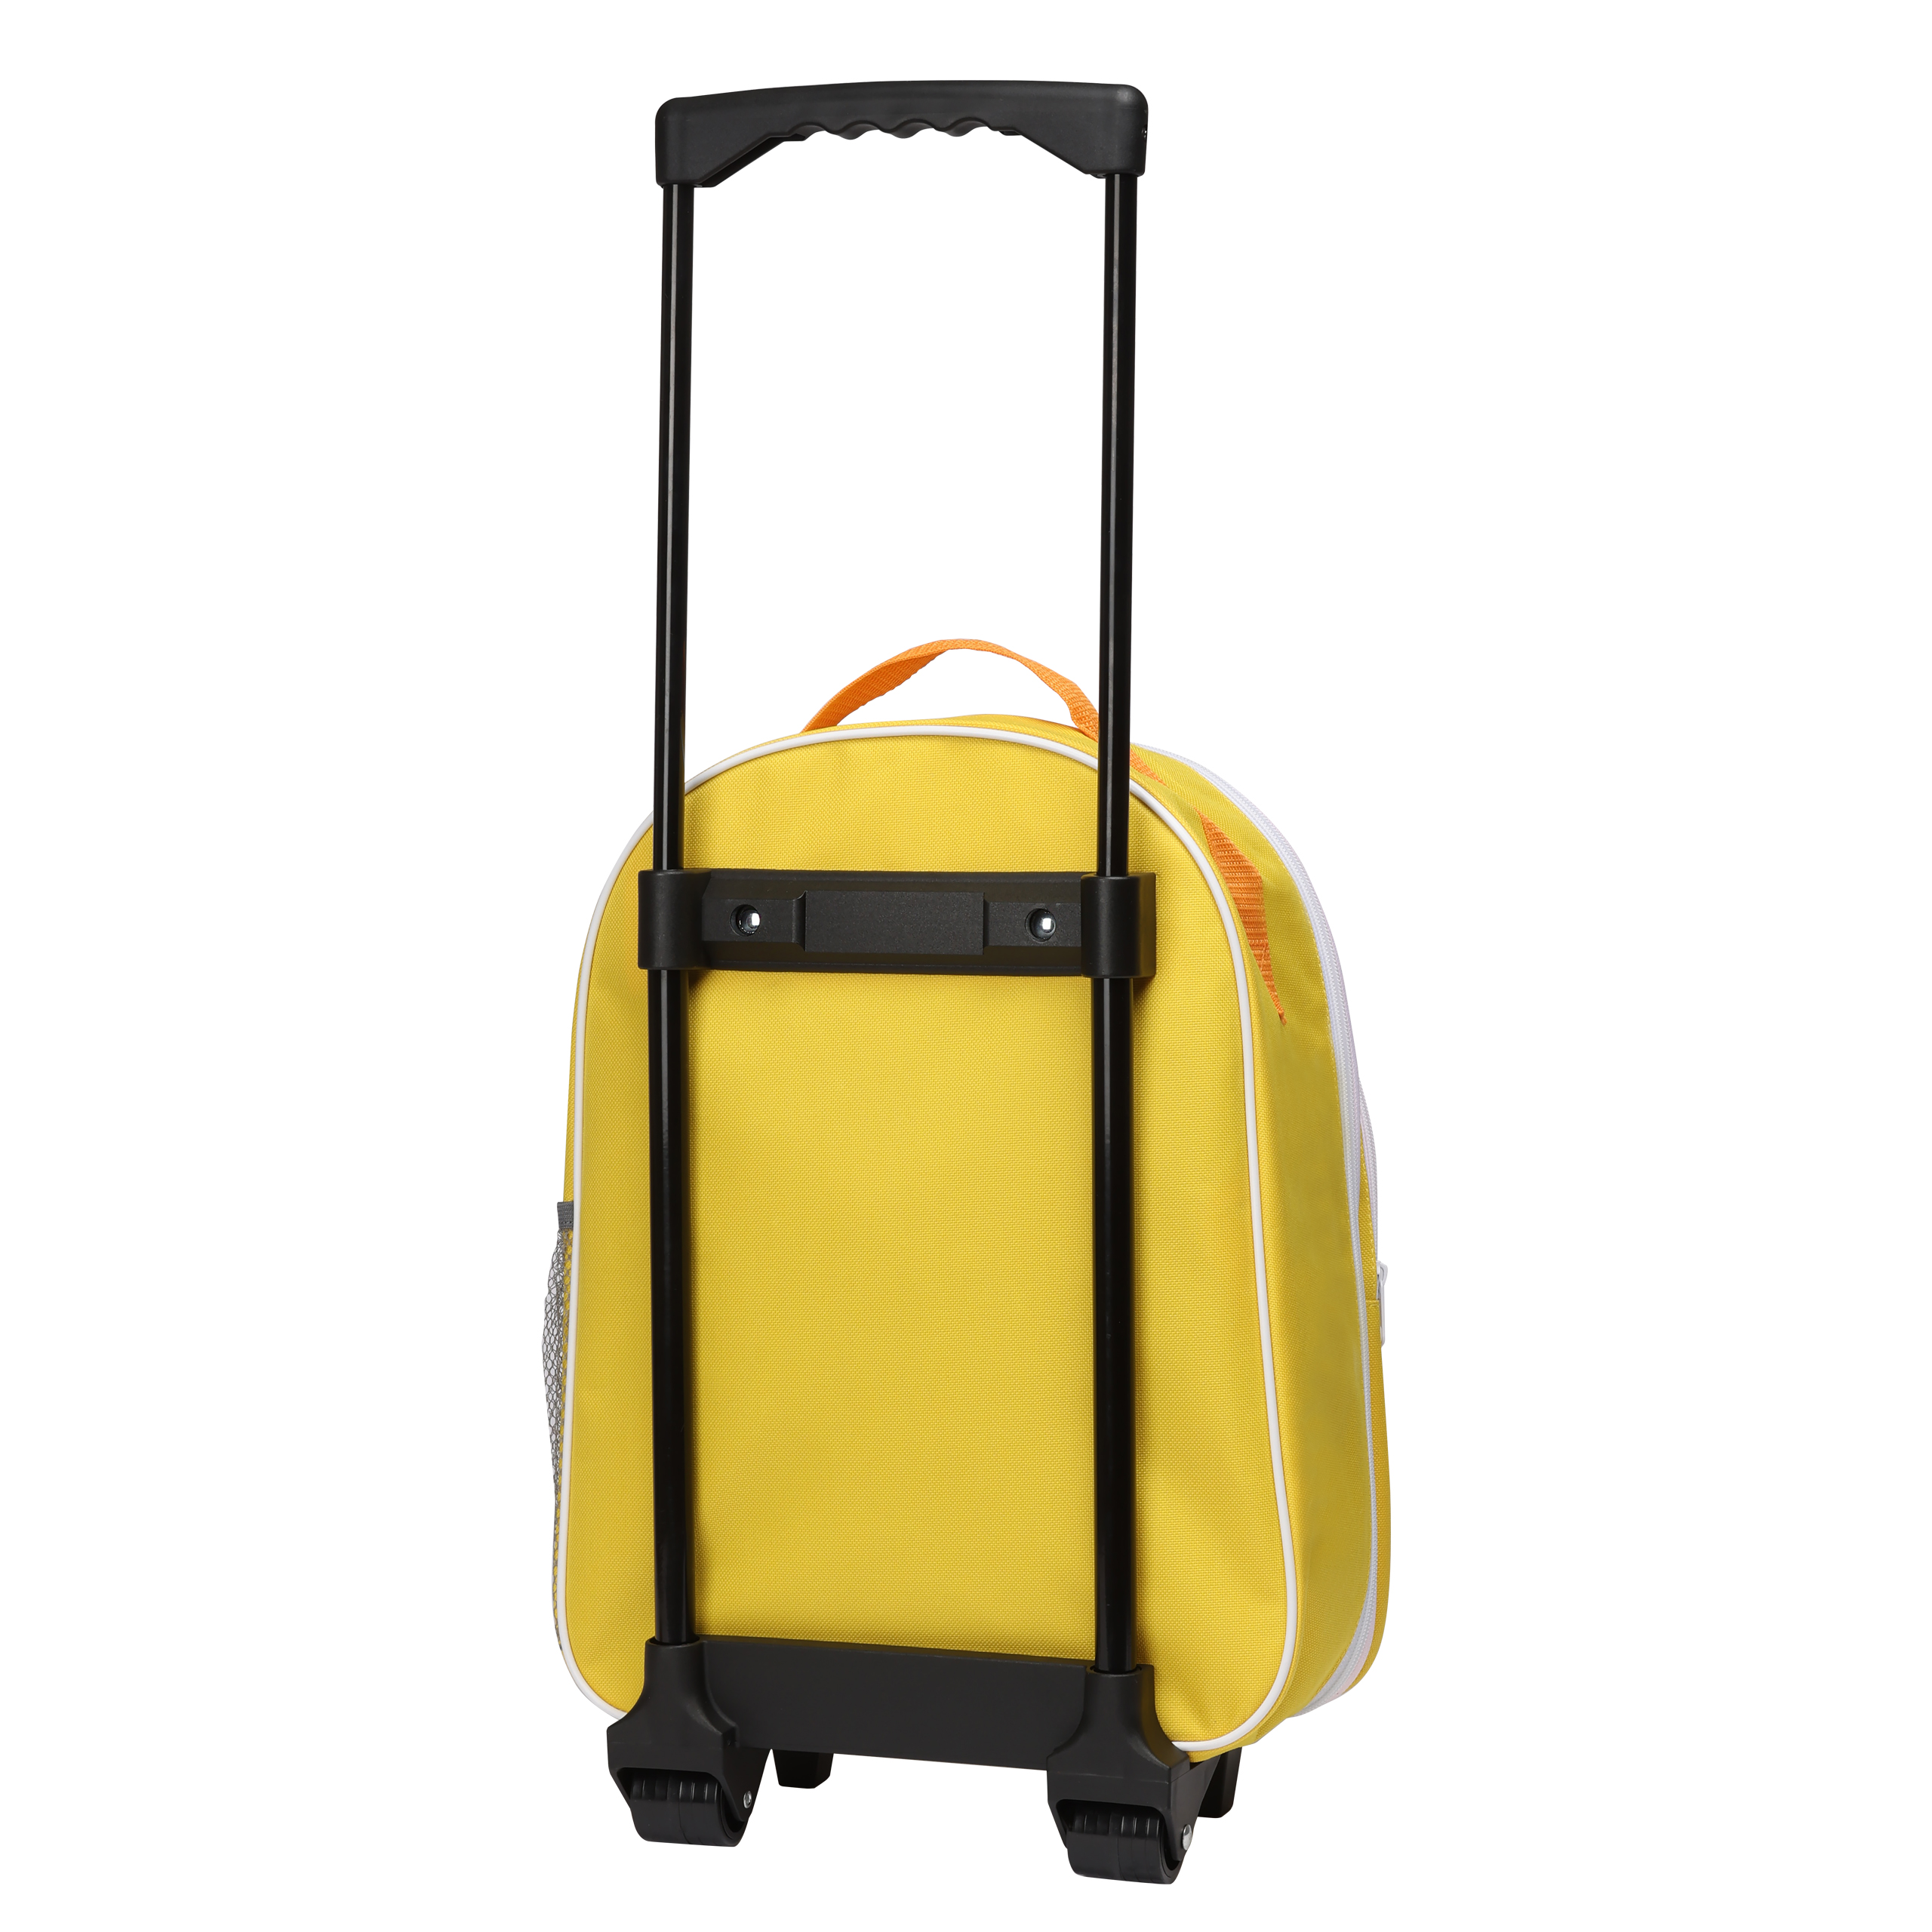 Pippi Långstrump pippi barnväska resväska gul